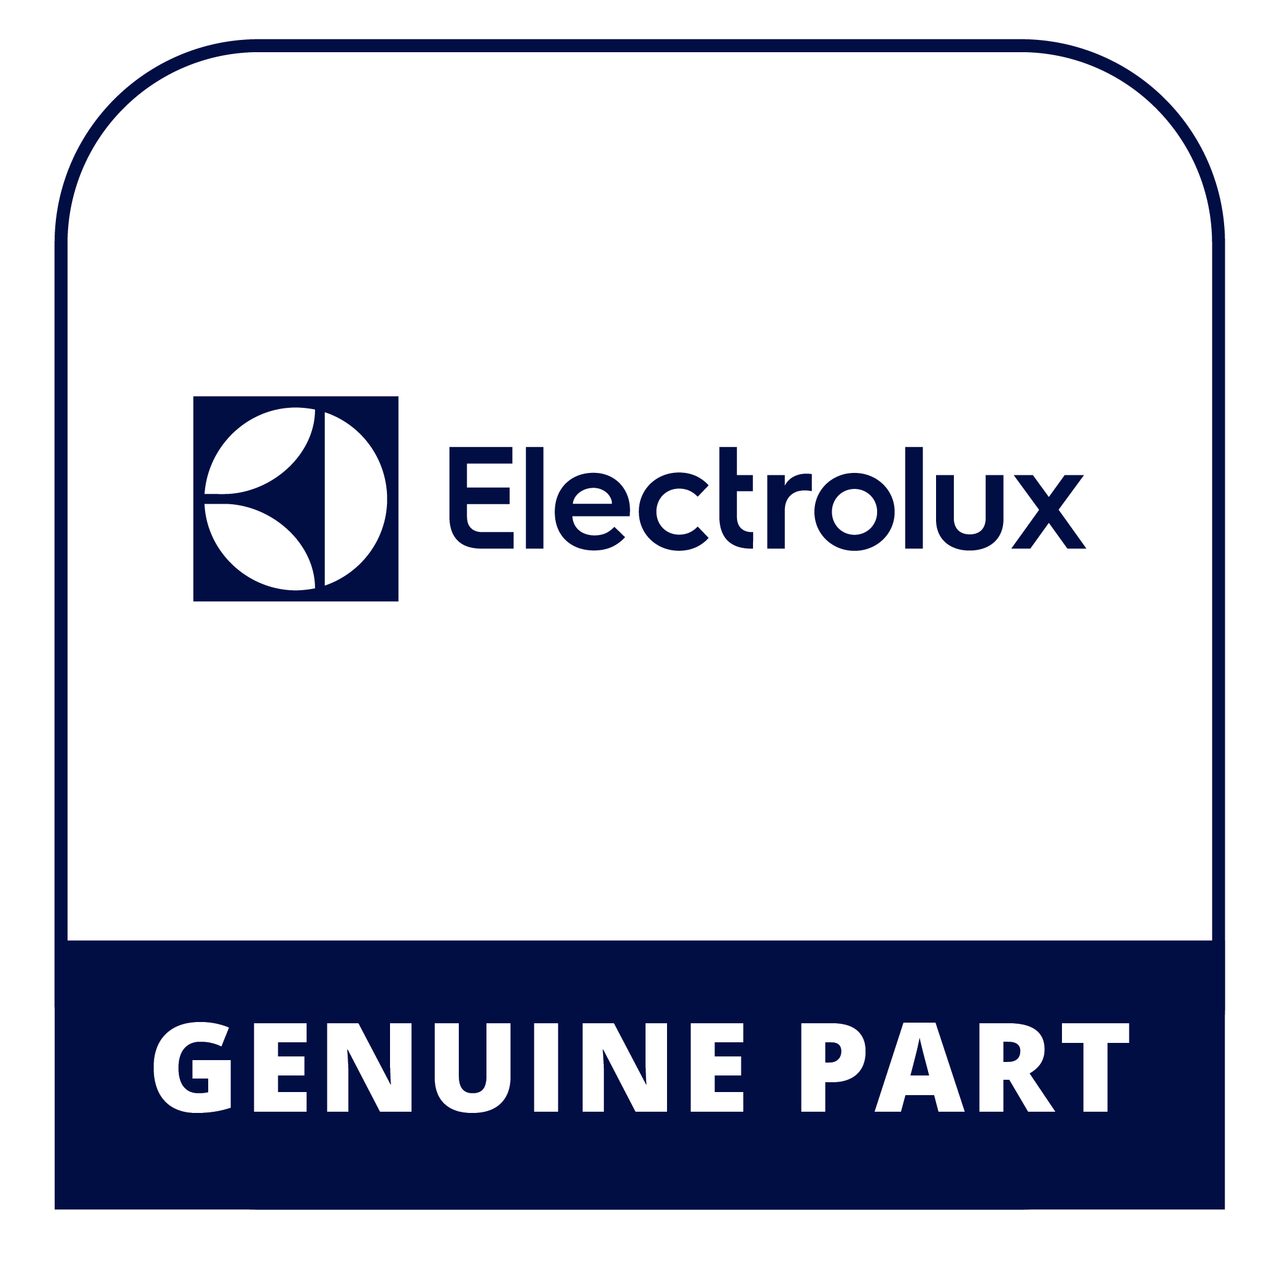 Frigidaire - Electrolux 318127414 Lp Conversion Kit - Genuine Electrolux Part